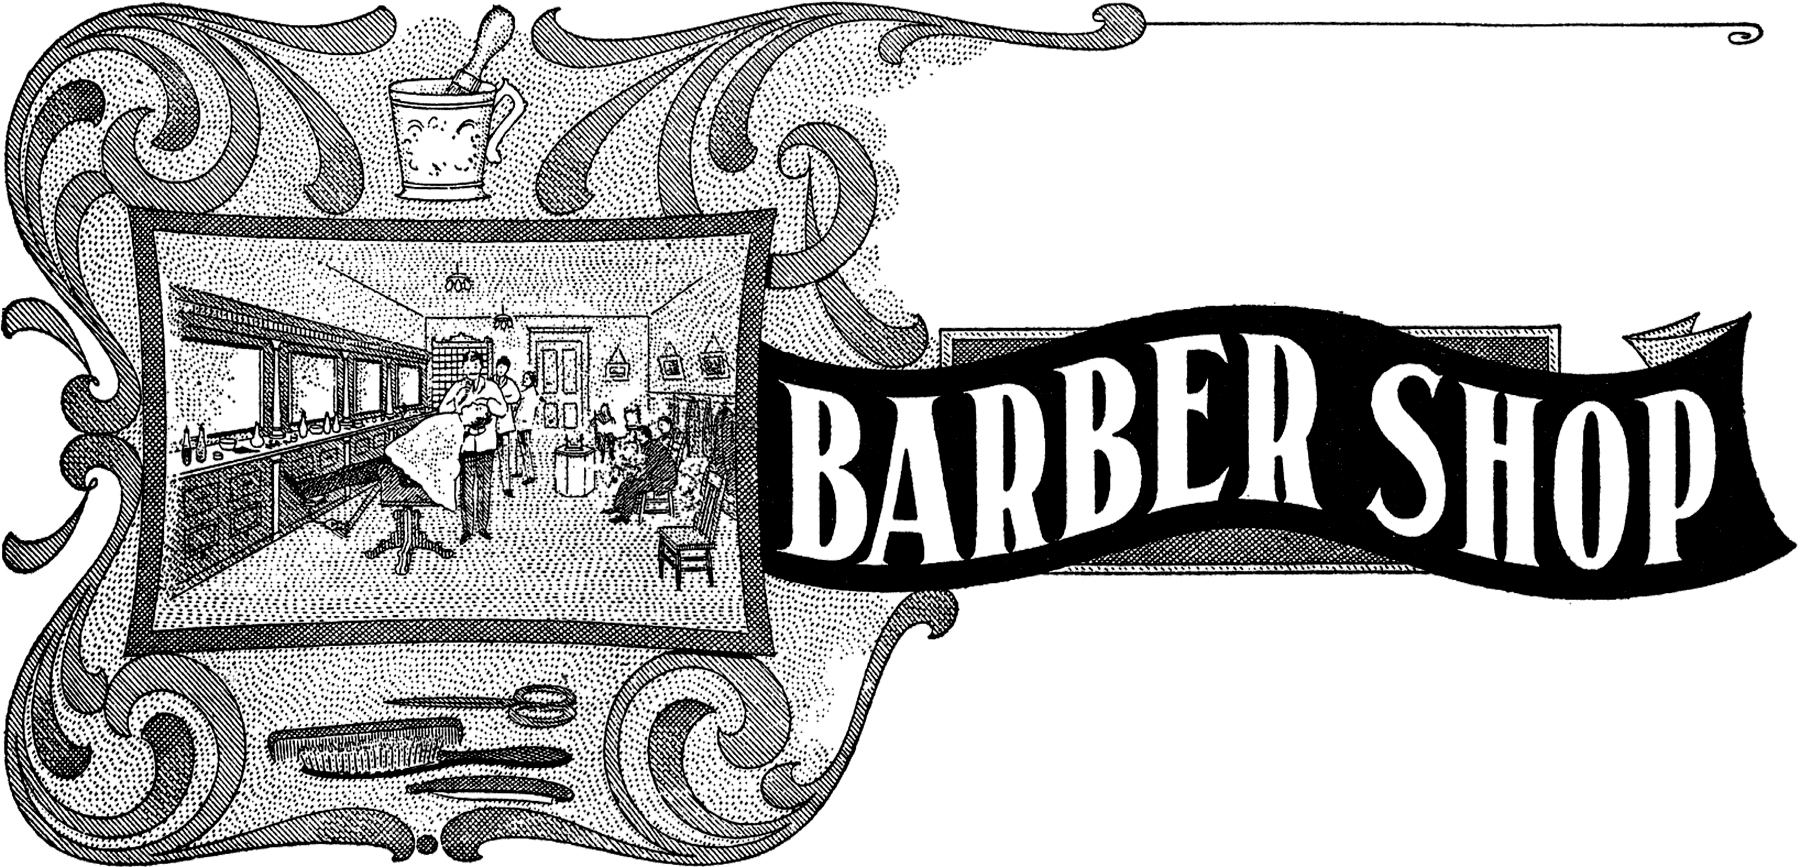 Vintage sign image the. Barber clipart barber shop